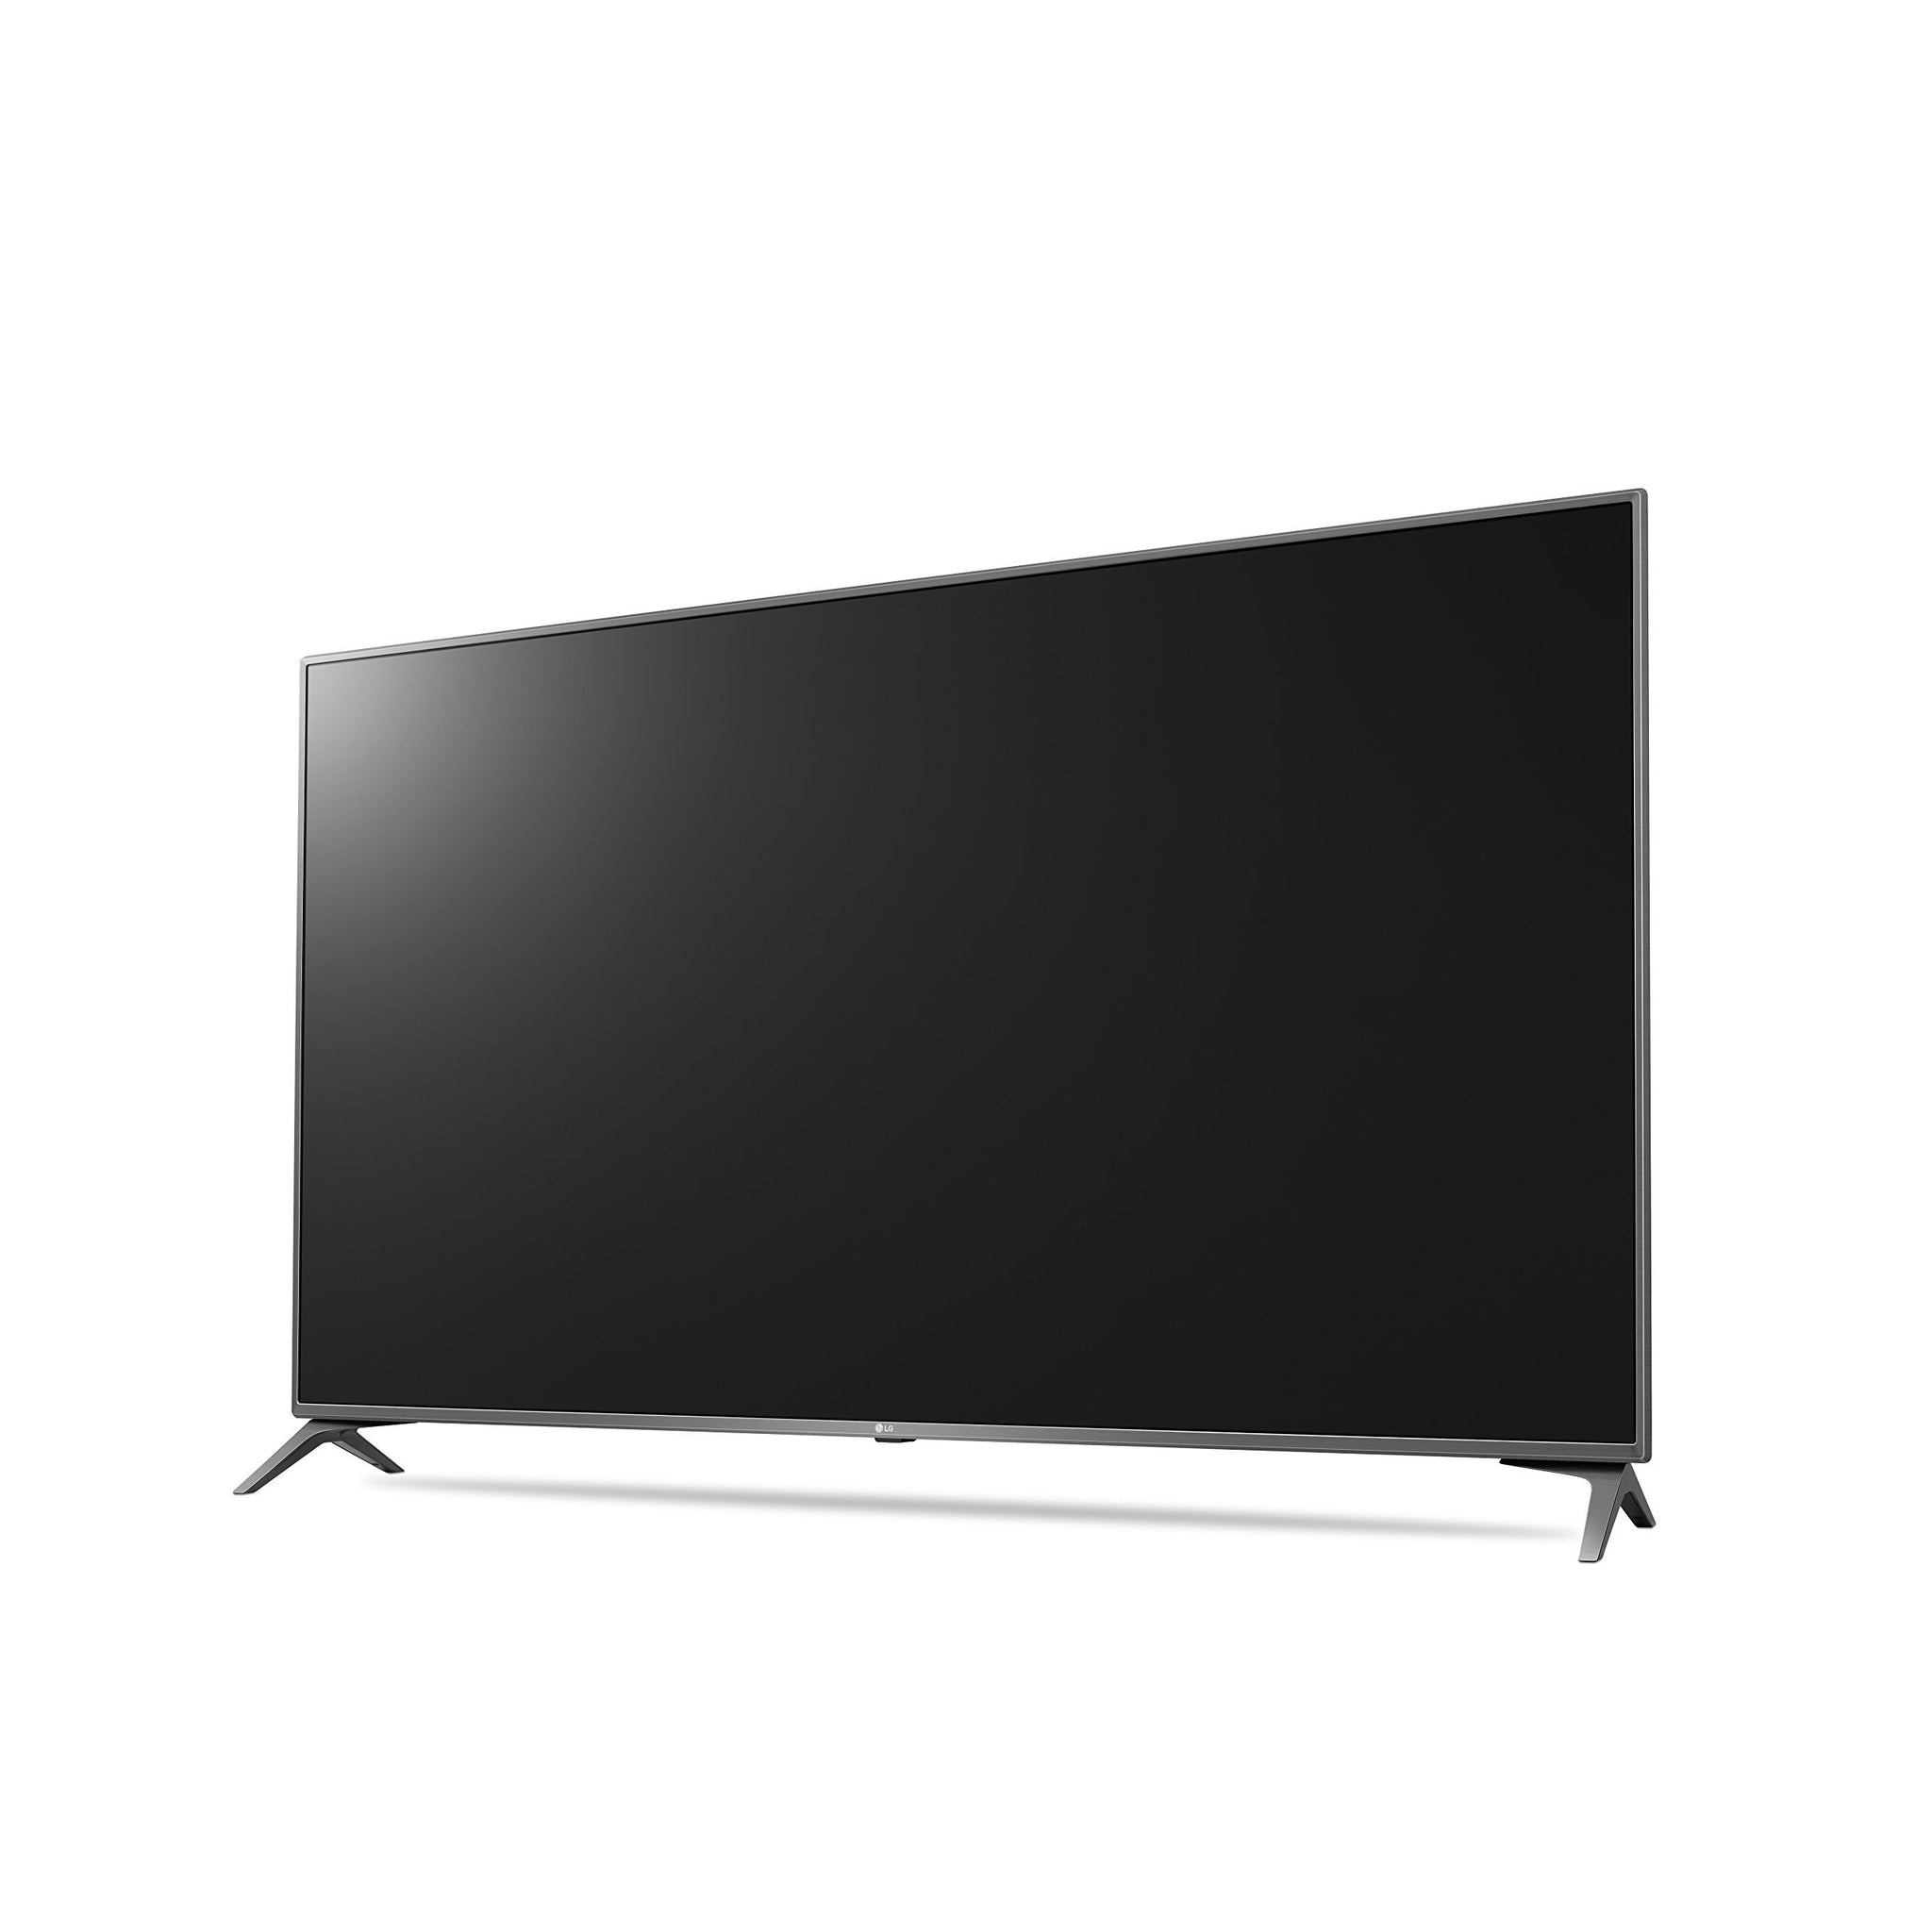 LG Smart TV 55" LED 4K(Refurbished)